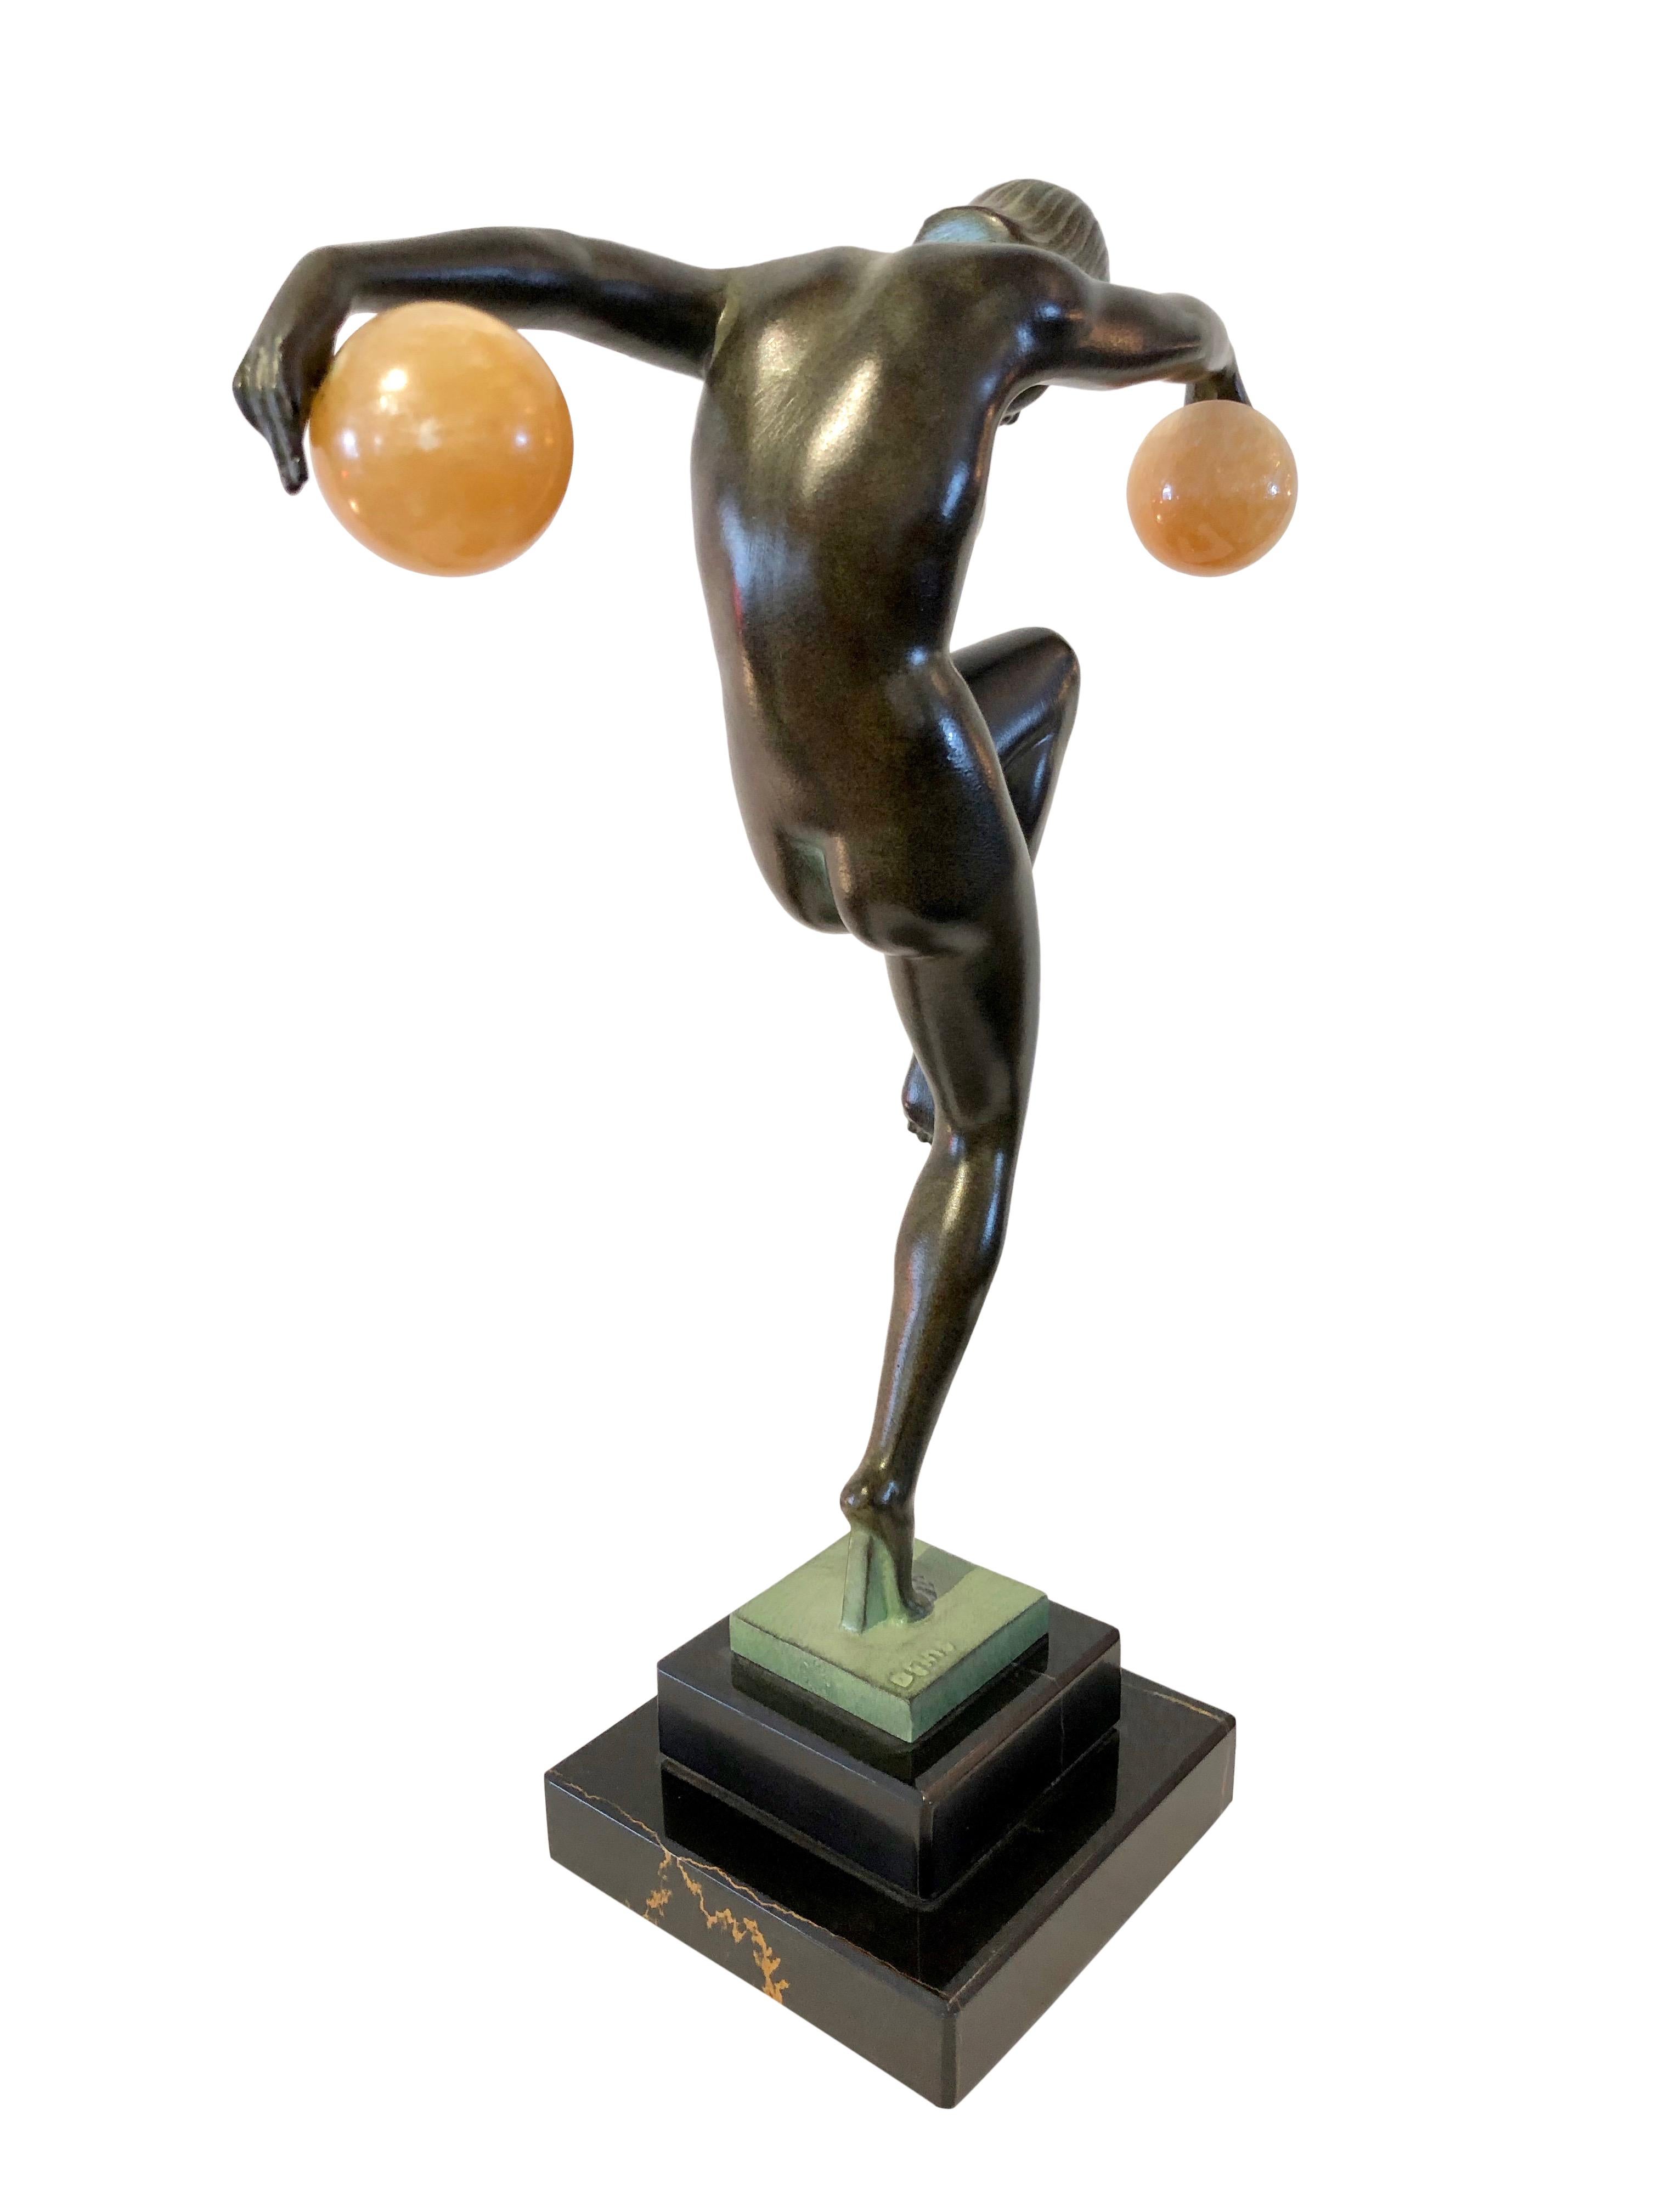 Contemporary Danseuse Aux Boules French Art Deco Dancer Sculpture by Denis for Max Le Verrier